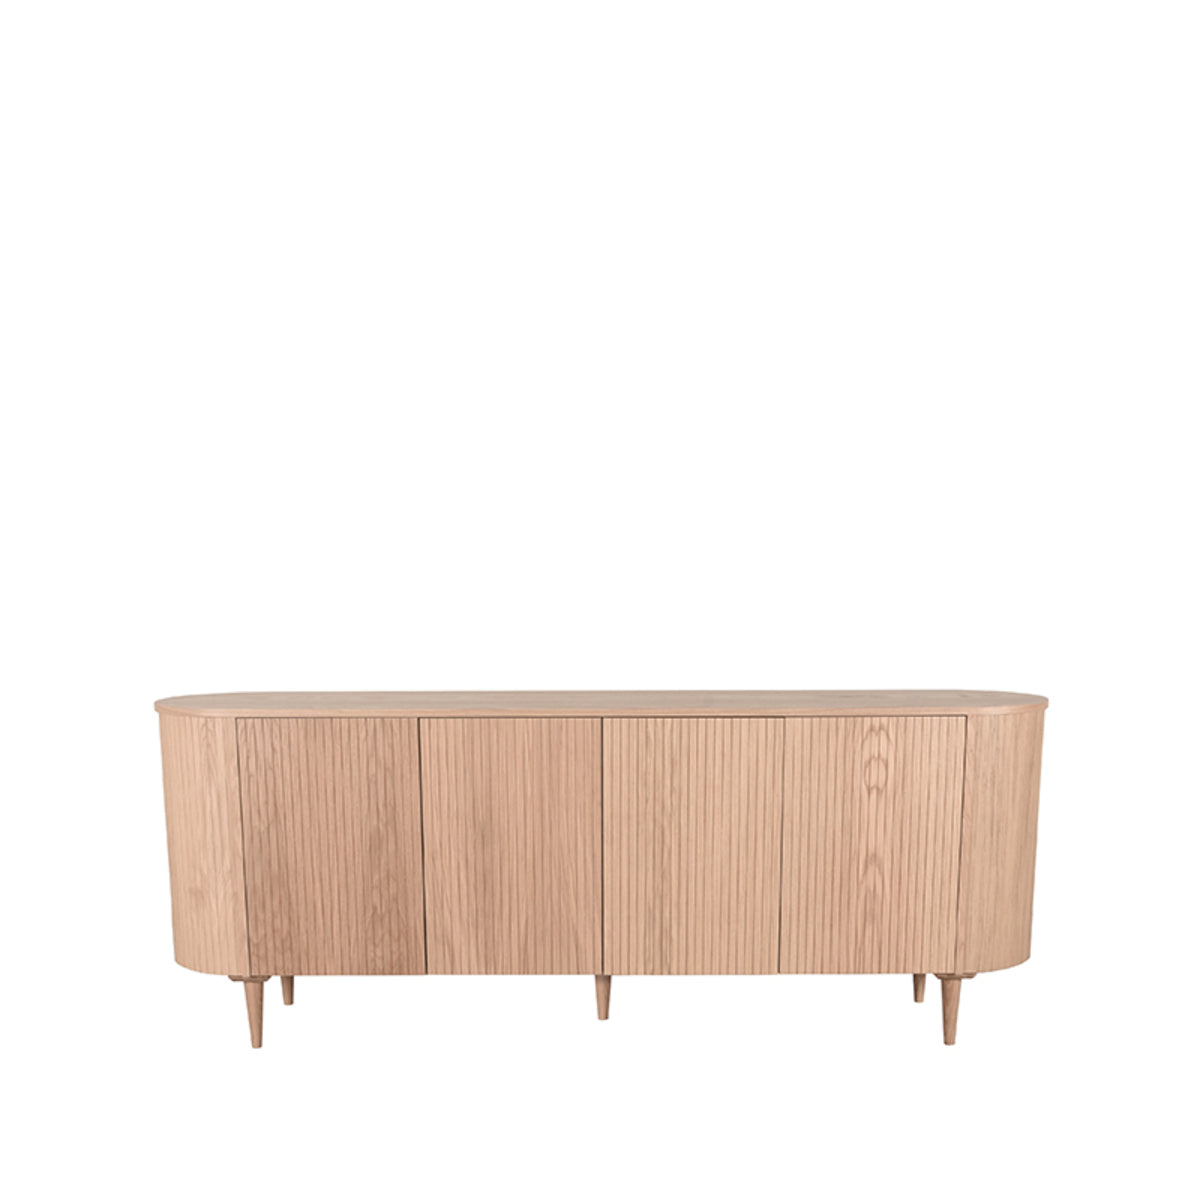 LABEL51 Sideboard Oliva - Natural - Oak - 220 cm